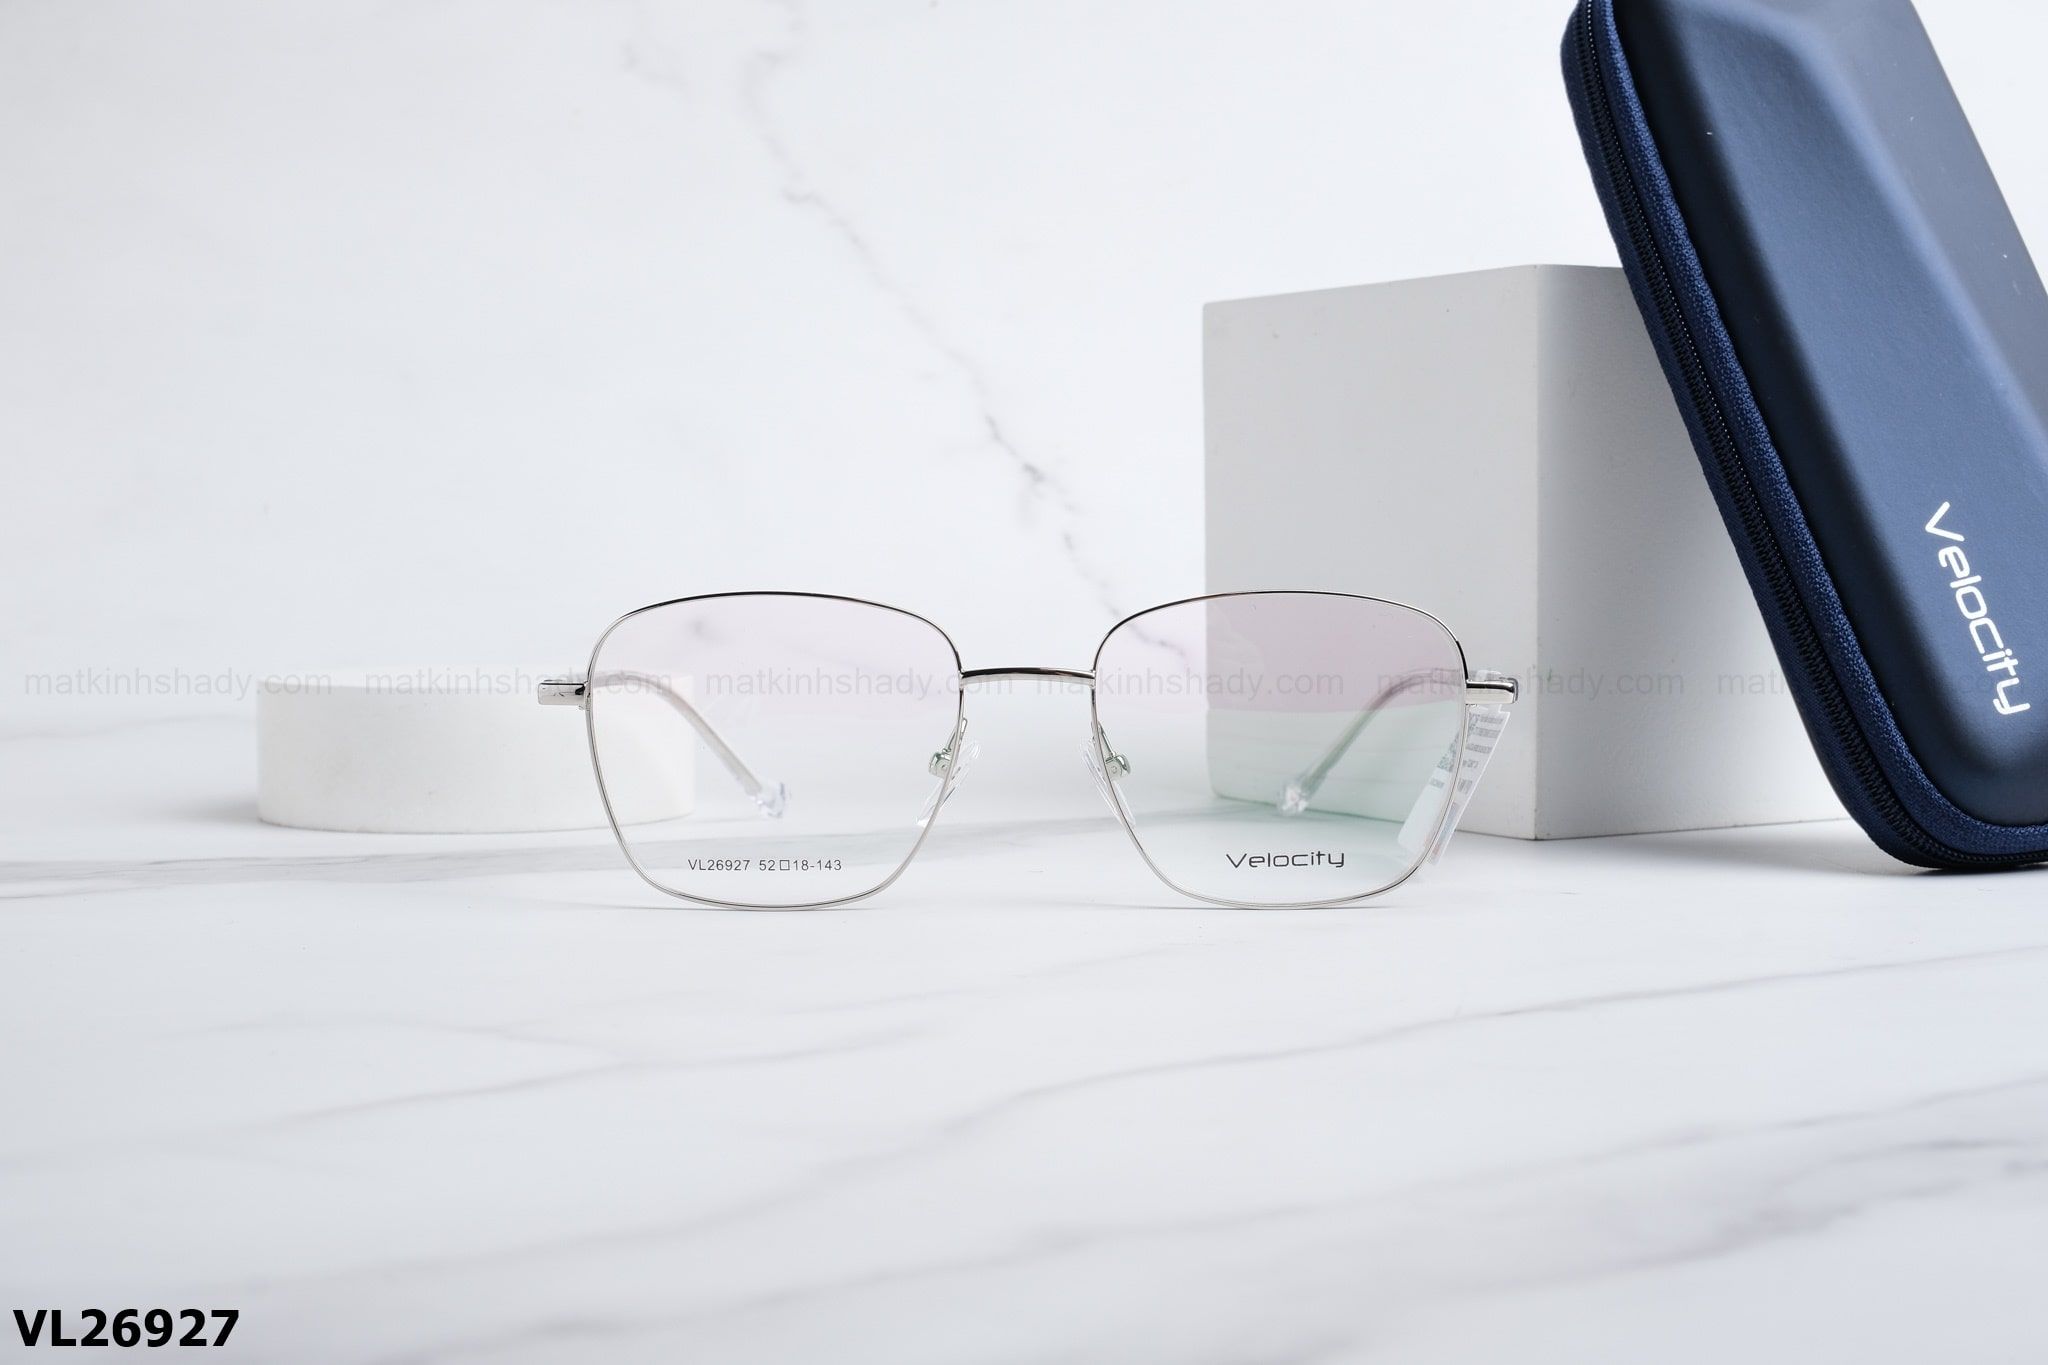  Velocity Eyewear - Glasses - VL26927 